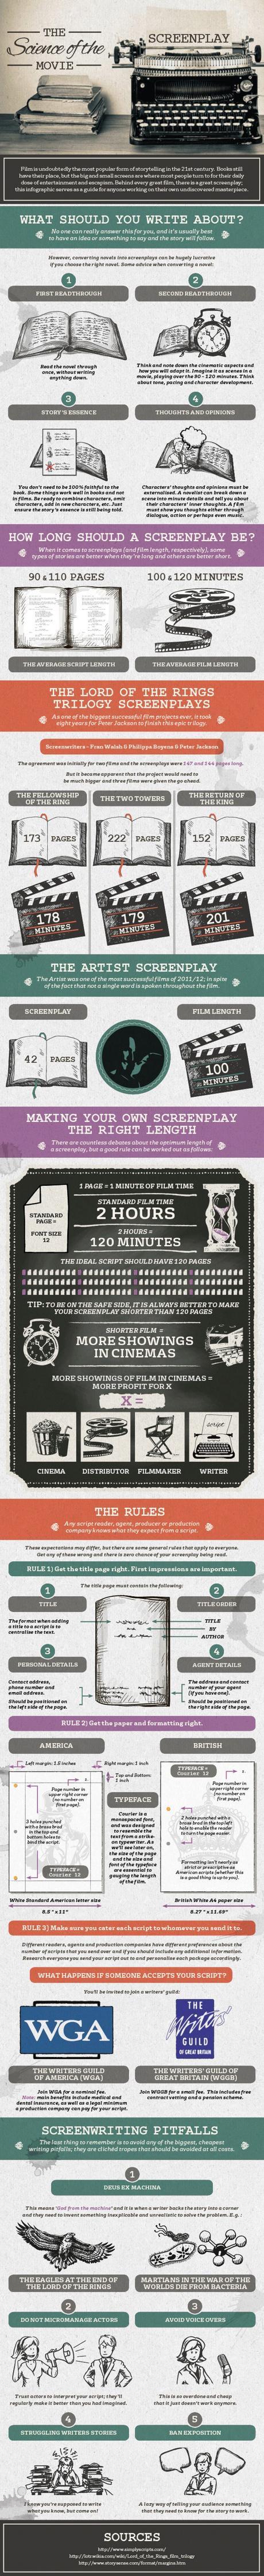 screenwriting-infographic